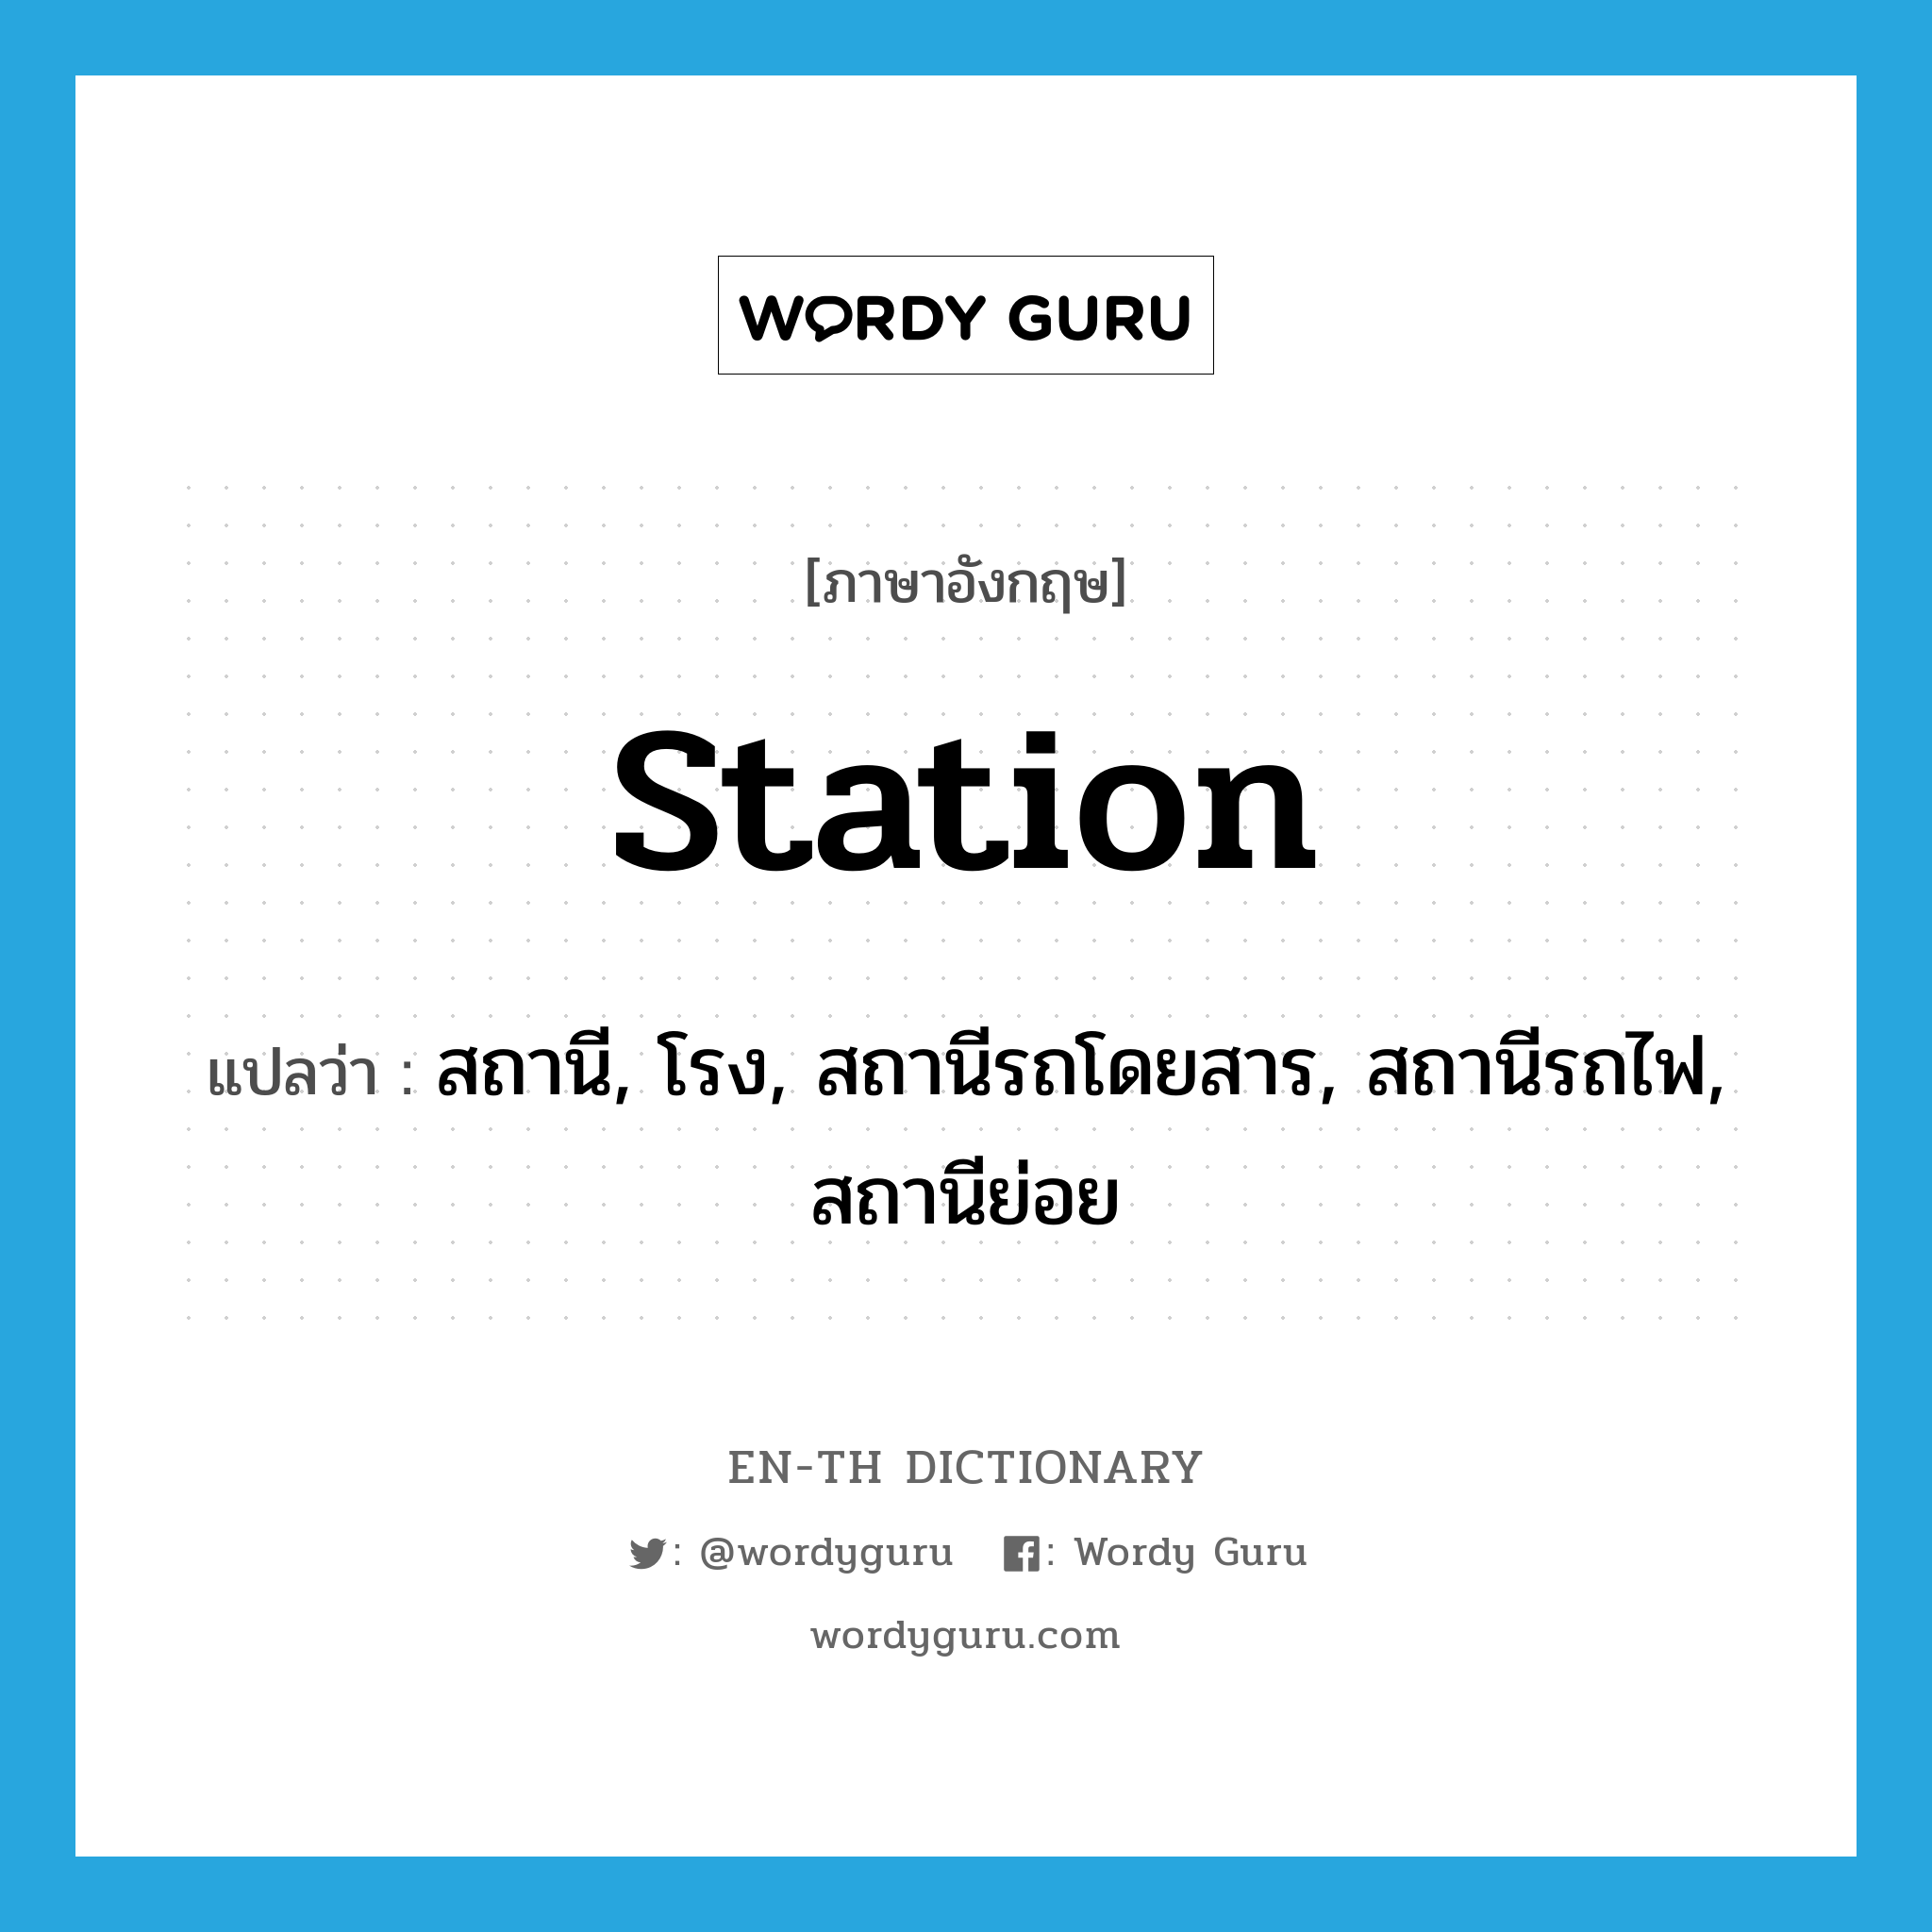 สถานี, โรง, สถานีรถโดยสาร, สถานีรถไฟ, สถานีย่อย ภาษาอังกฤษ?, คำศัพท์ภาษาอังกฤษ สถานี, โรง, สถานีรถโดยสาร, สถานีรถไฟ, สถานีย่อย แปลว่า station ประเภท N หมวด N